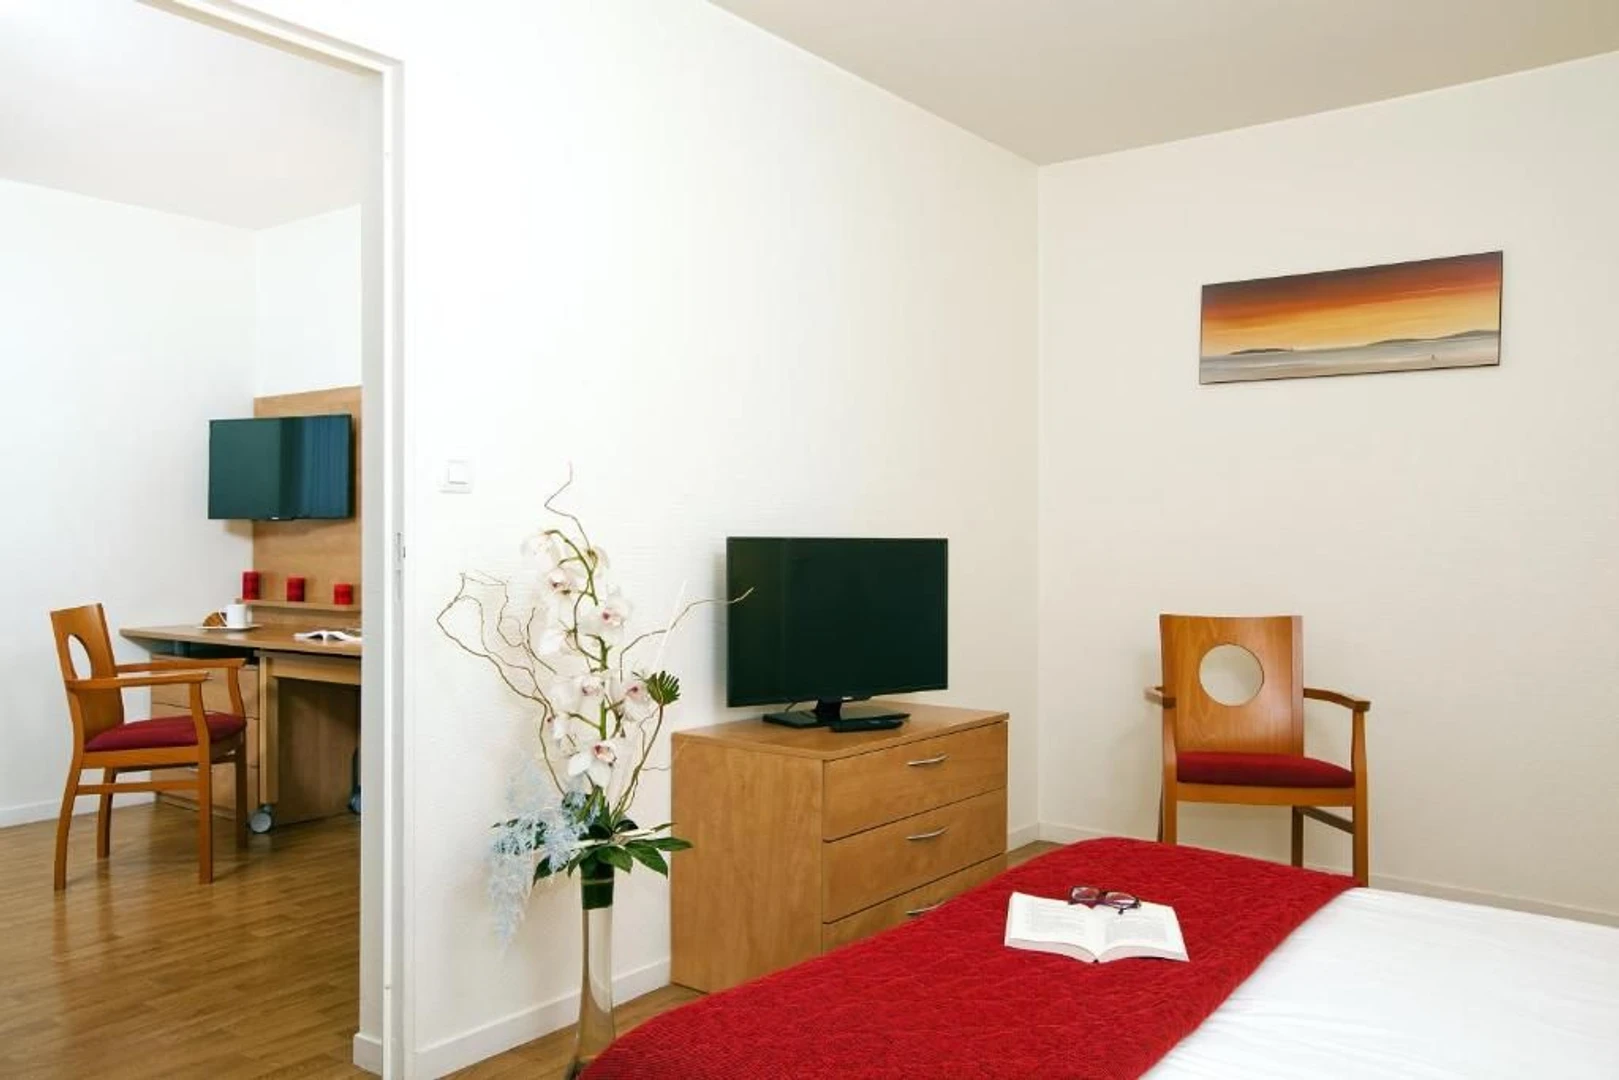 Quarto para alugar num apartamento partilhado em Rennes